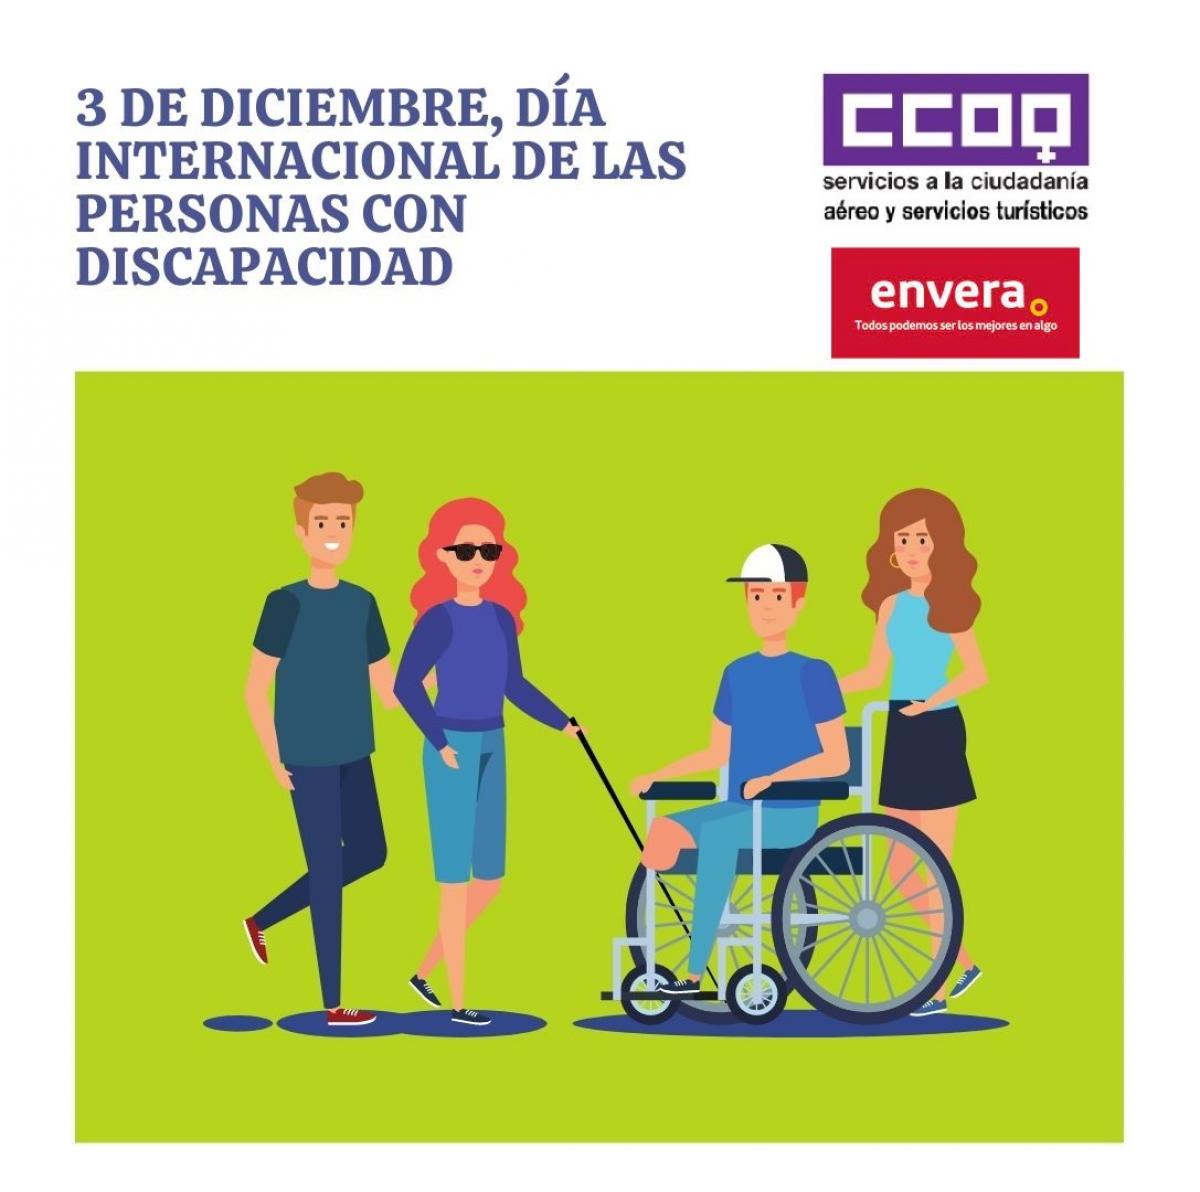 El Sector Aéreo y Servicios Turísticos de CCOO, comprometido con la inserción laboral en el Día Internacional de las Personas con Discapacidad.